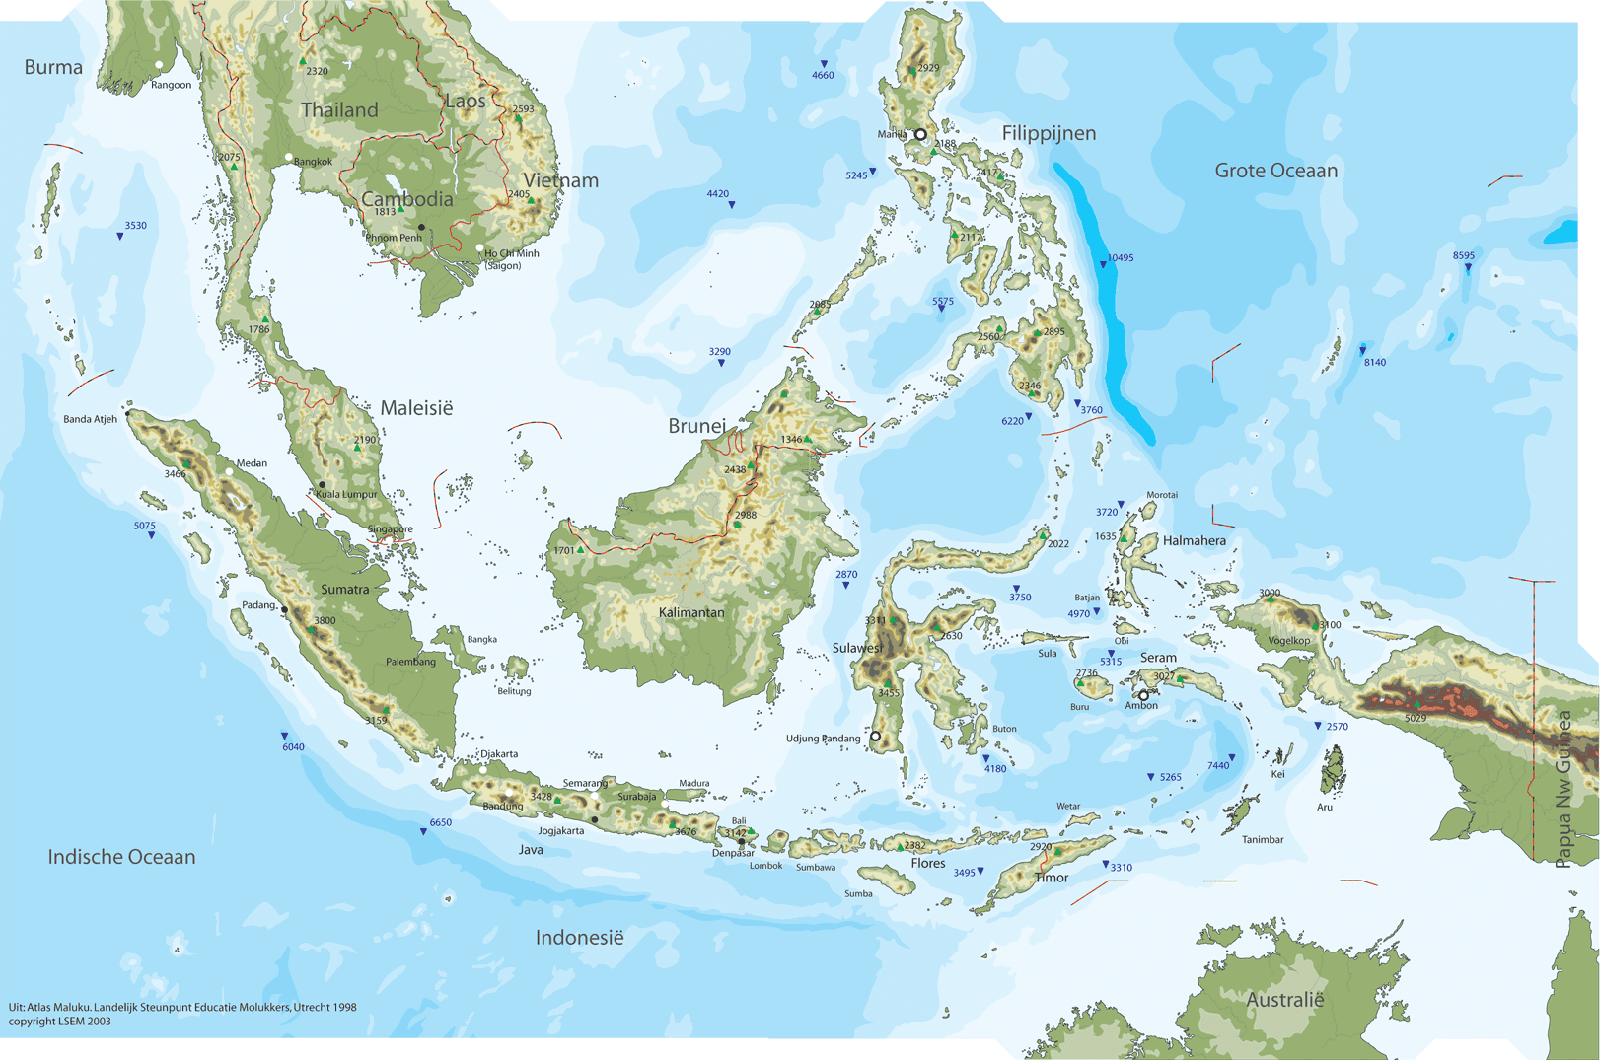  Gambar Peta Indonesia  Lengkap Kumpulan Gambar  Lengkap